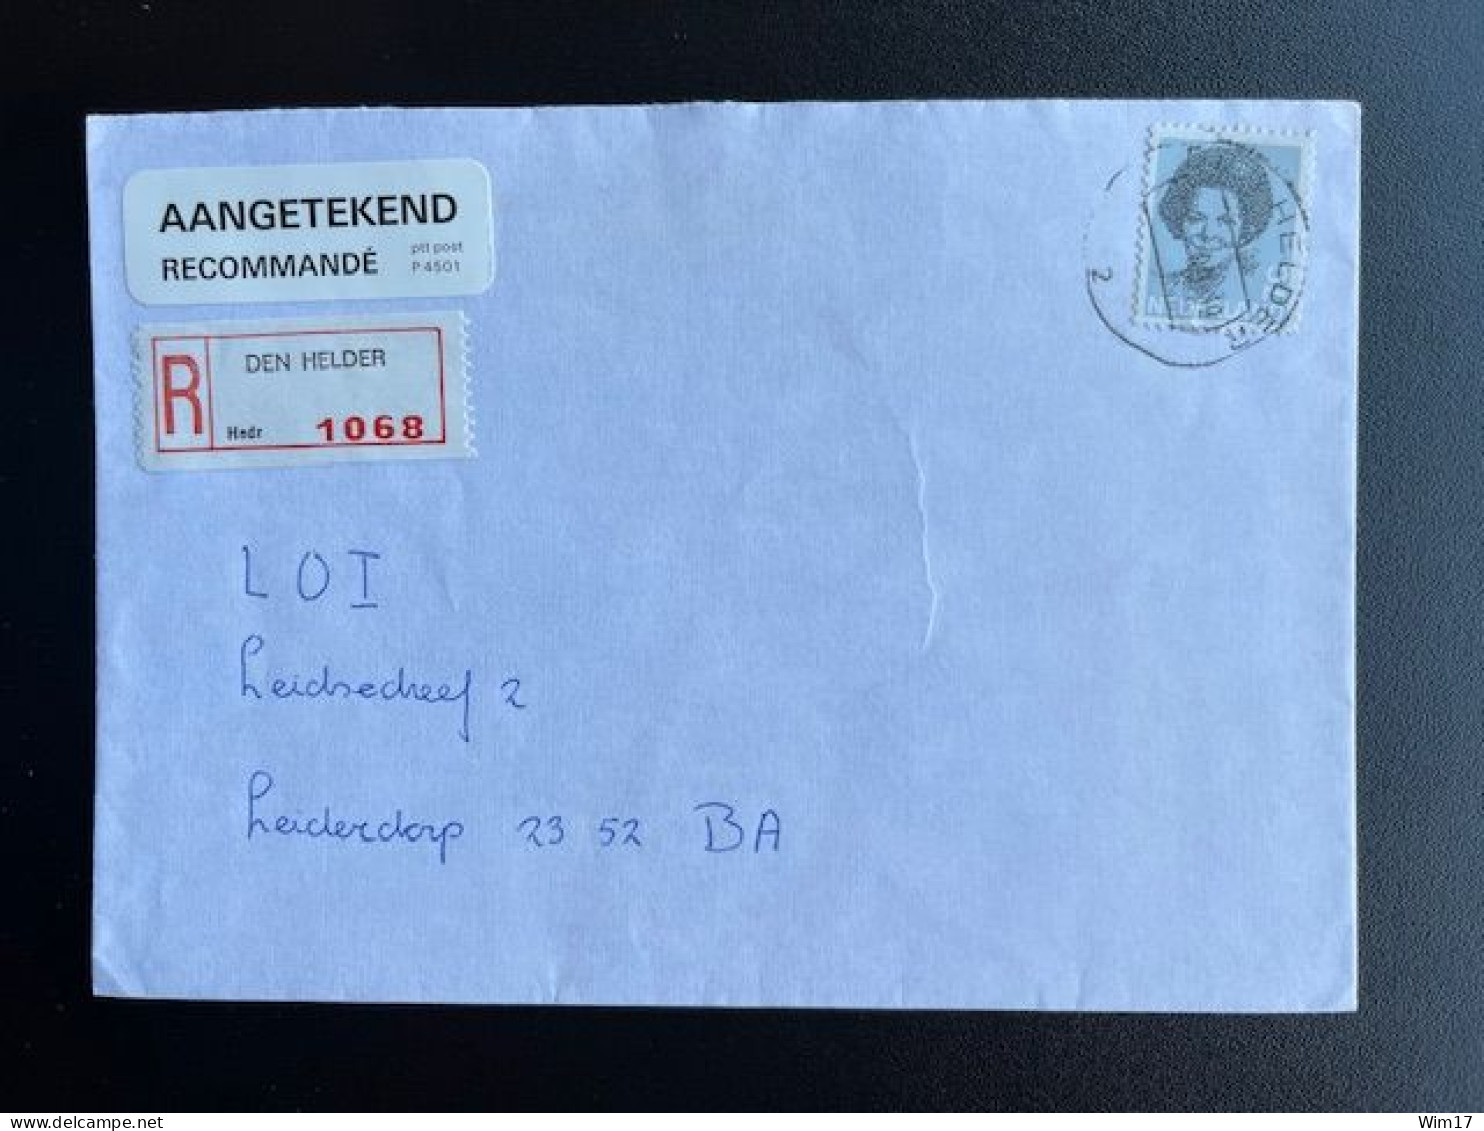 NETHERLANDS 1989 REGISTERED LETTER DEN HELDER TO LEIDERDORP NEDERLAND AANGETEKEND - Lettres & Documents